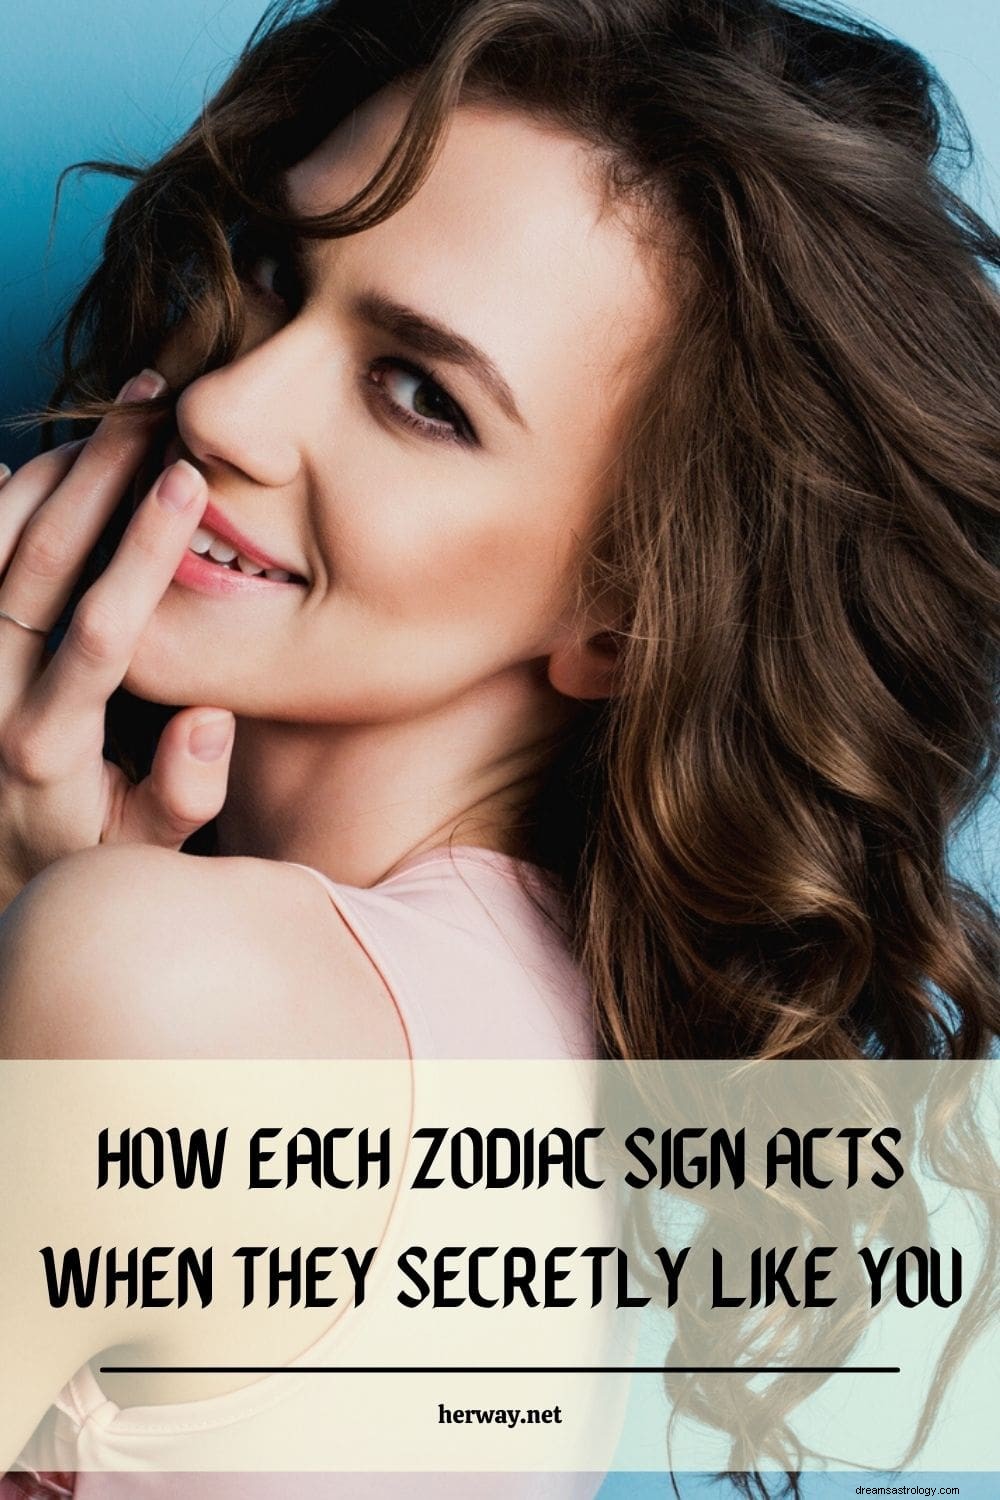 Cómo actúa cada signo zodiacal cuando le gustas en secreto